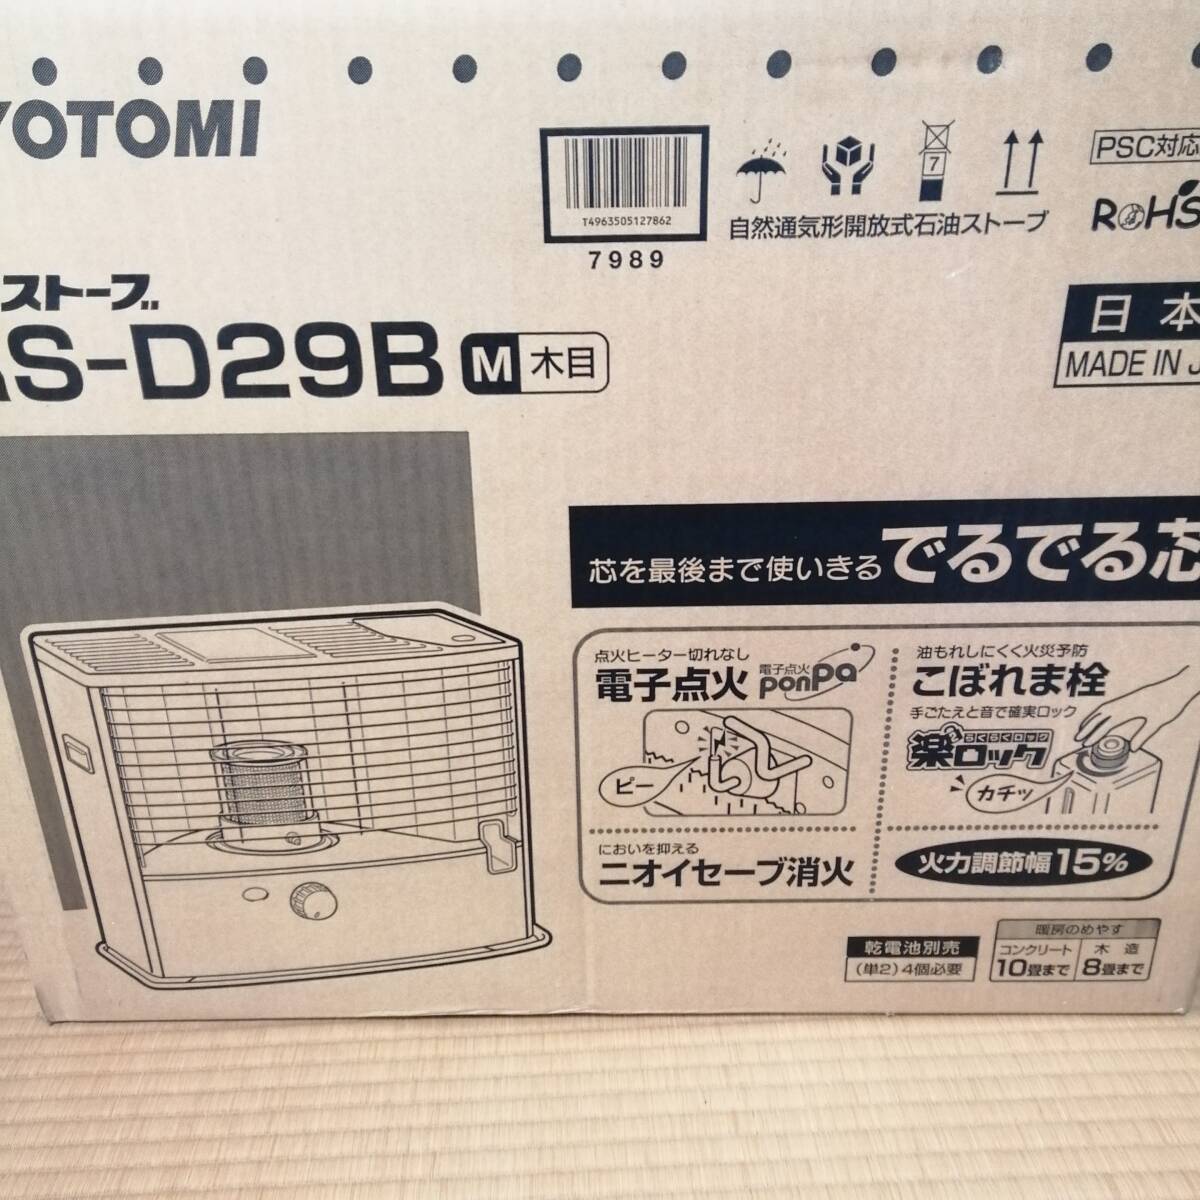  Toyotomi kerosine stove RS-D29B(M)( wood grain )